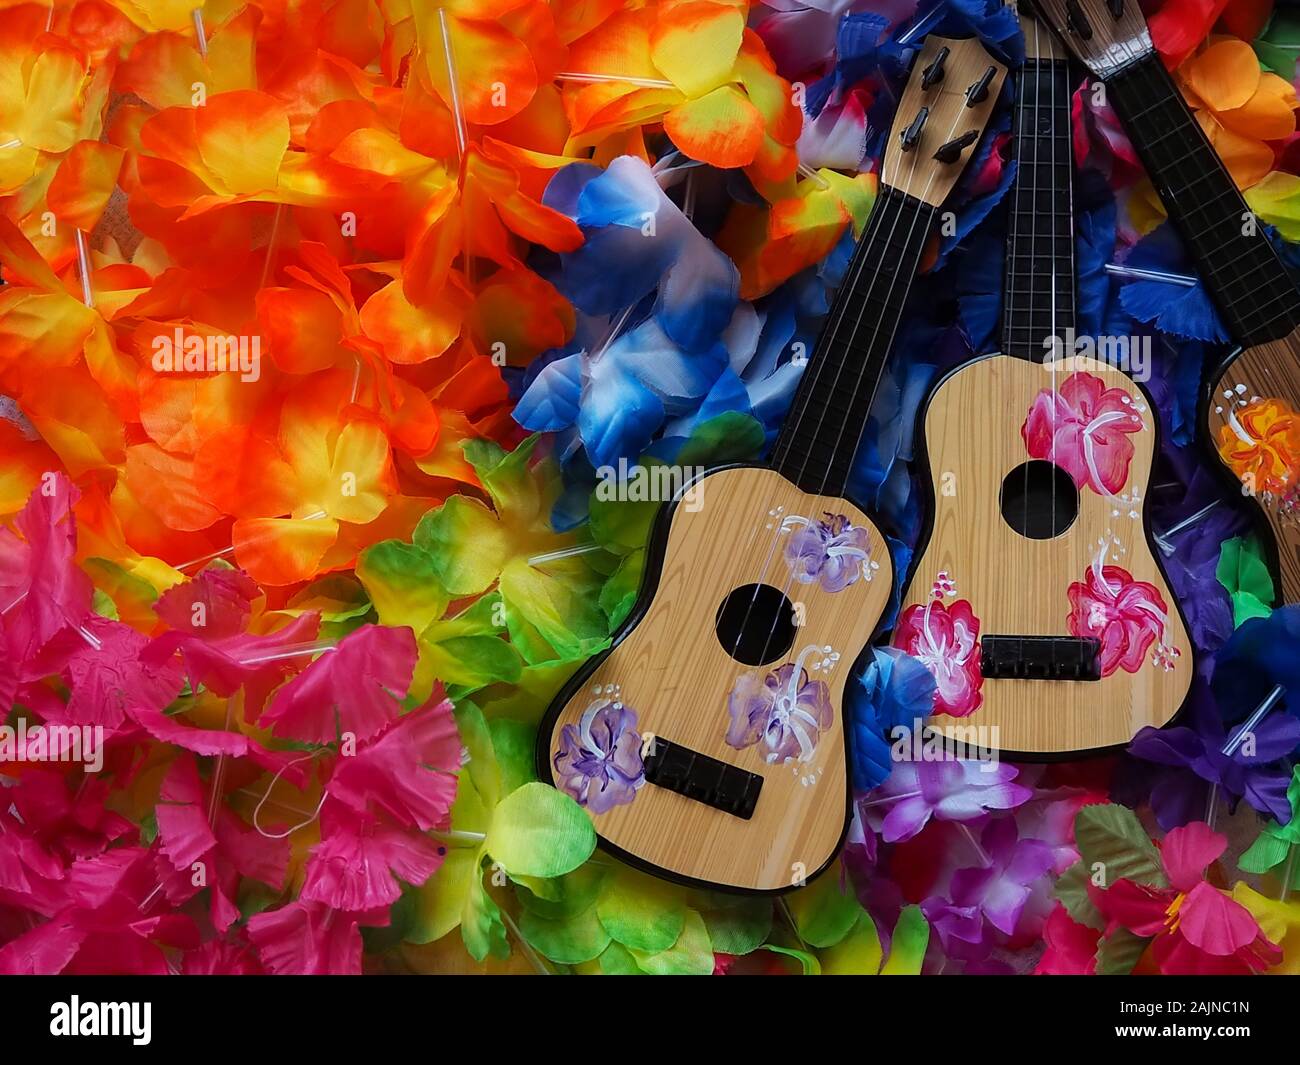 Eine Sammlung von Hawaii Luau party Dekorationen einschließlich zwei Spielzeug gemalt ukeleles auf einem Bett von Kostüm blumenketten. Stockfoto